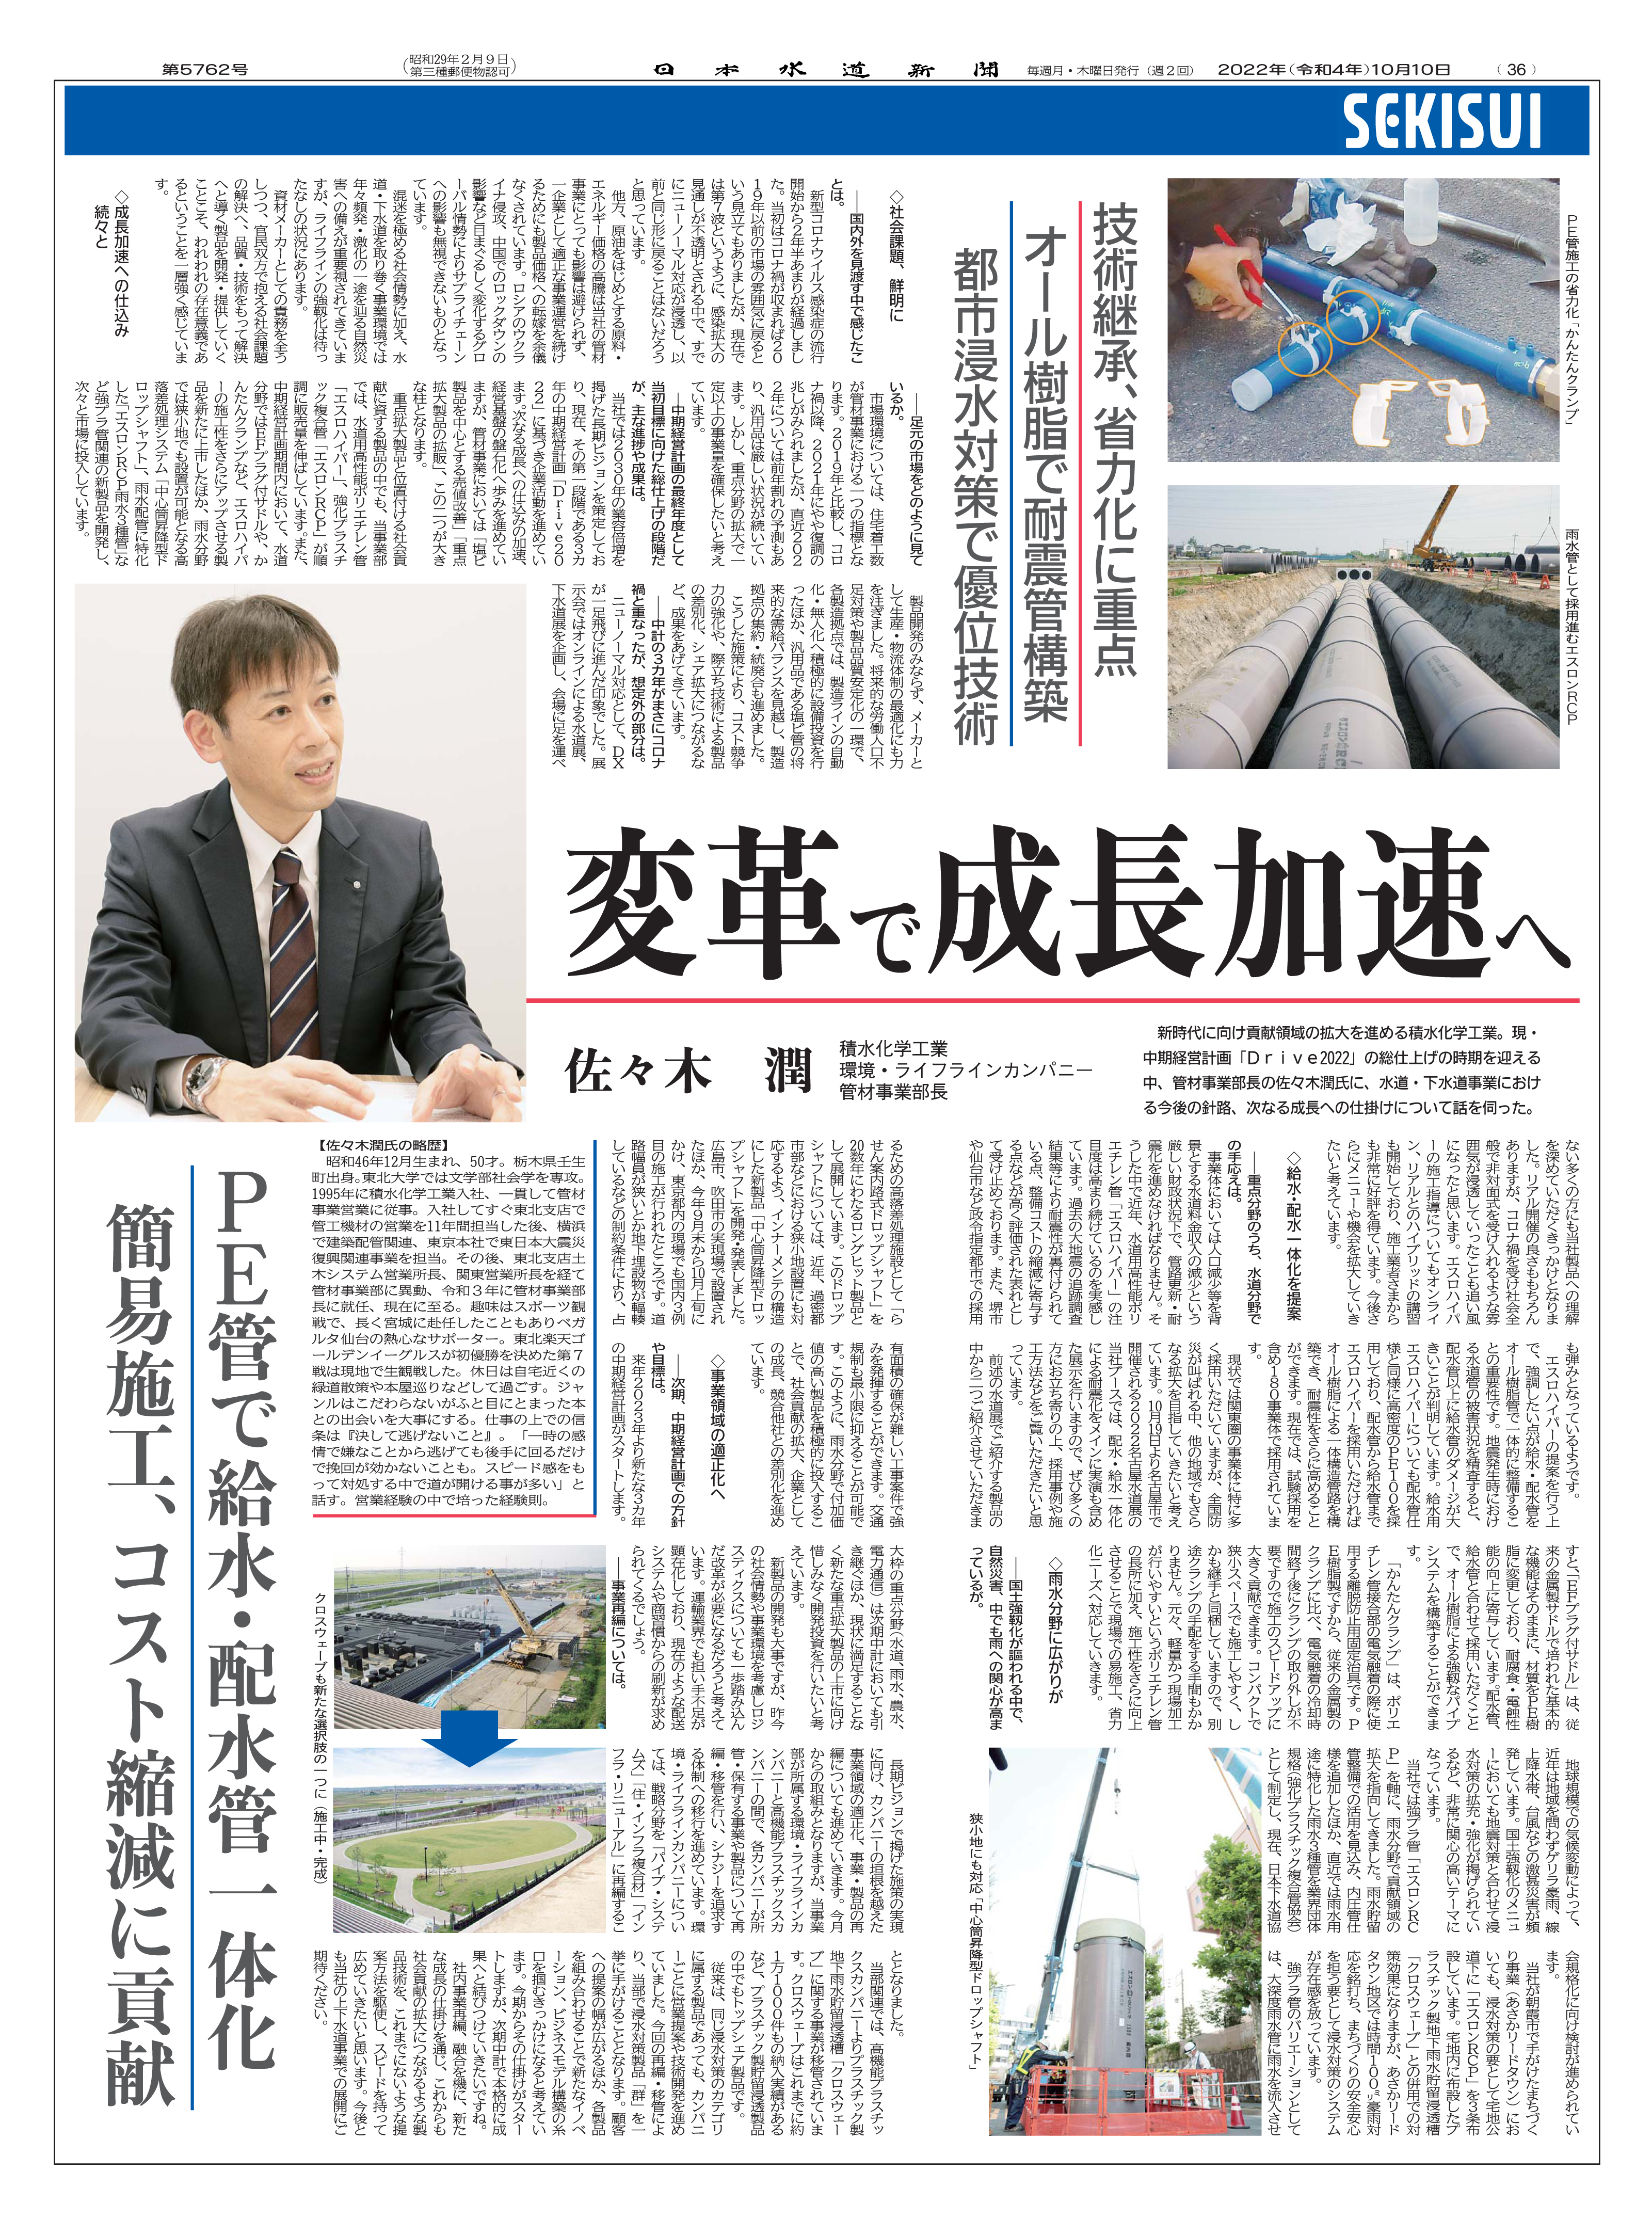 日本水道新聞にて、当社の水道・下水道事業における今後の針路、次なる成長への仕掛けについて紹介されました